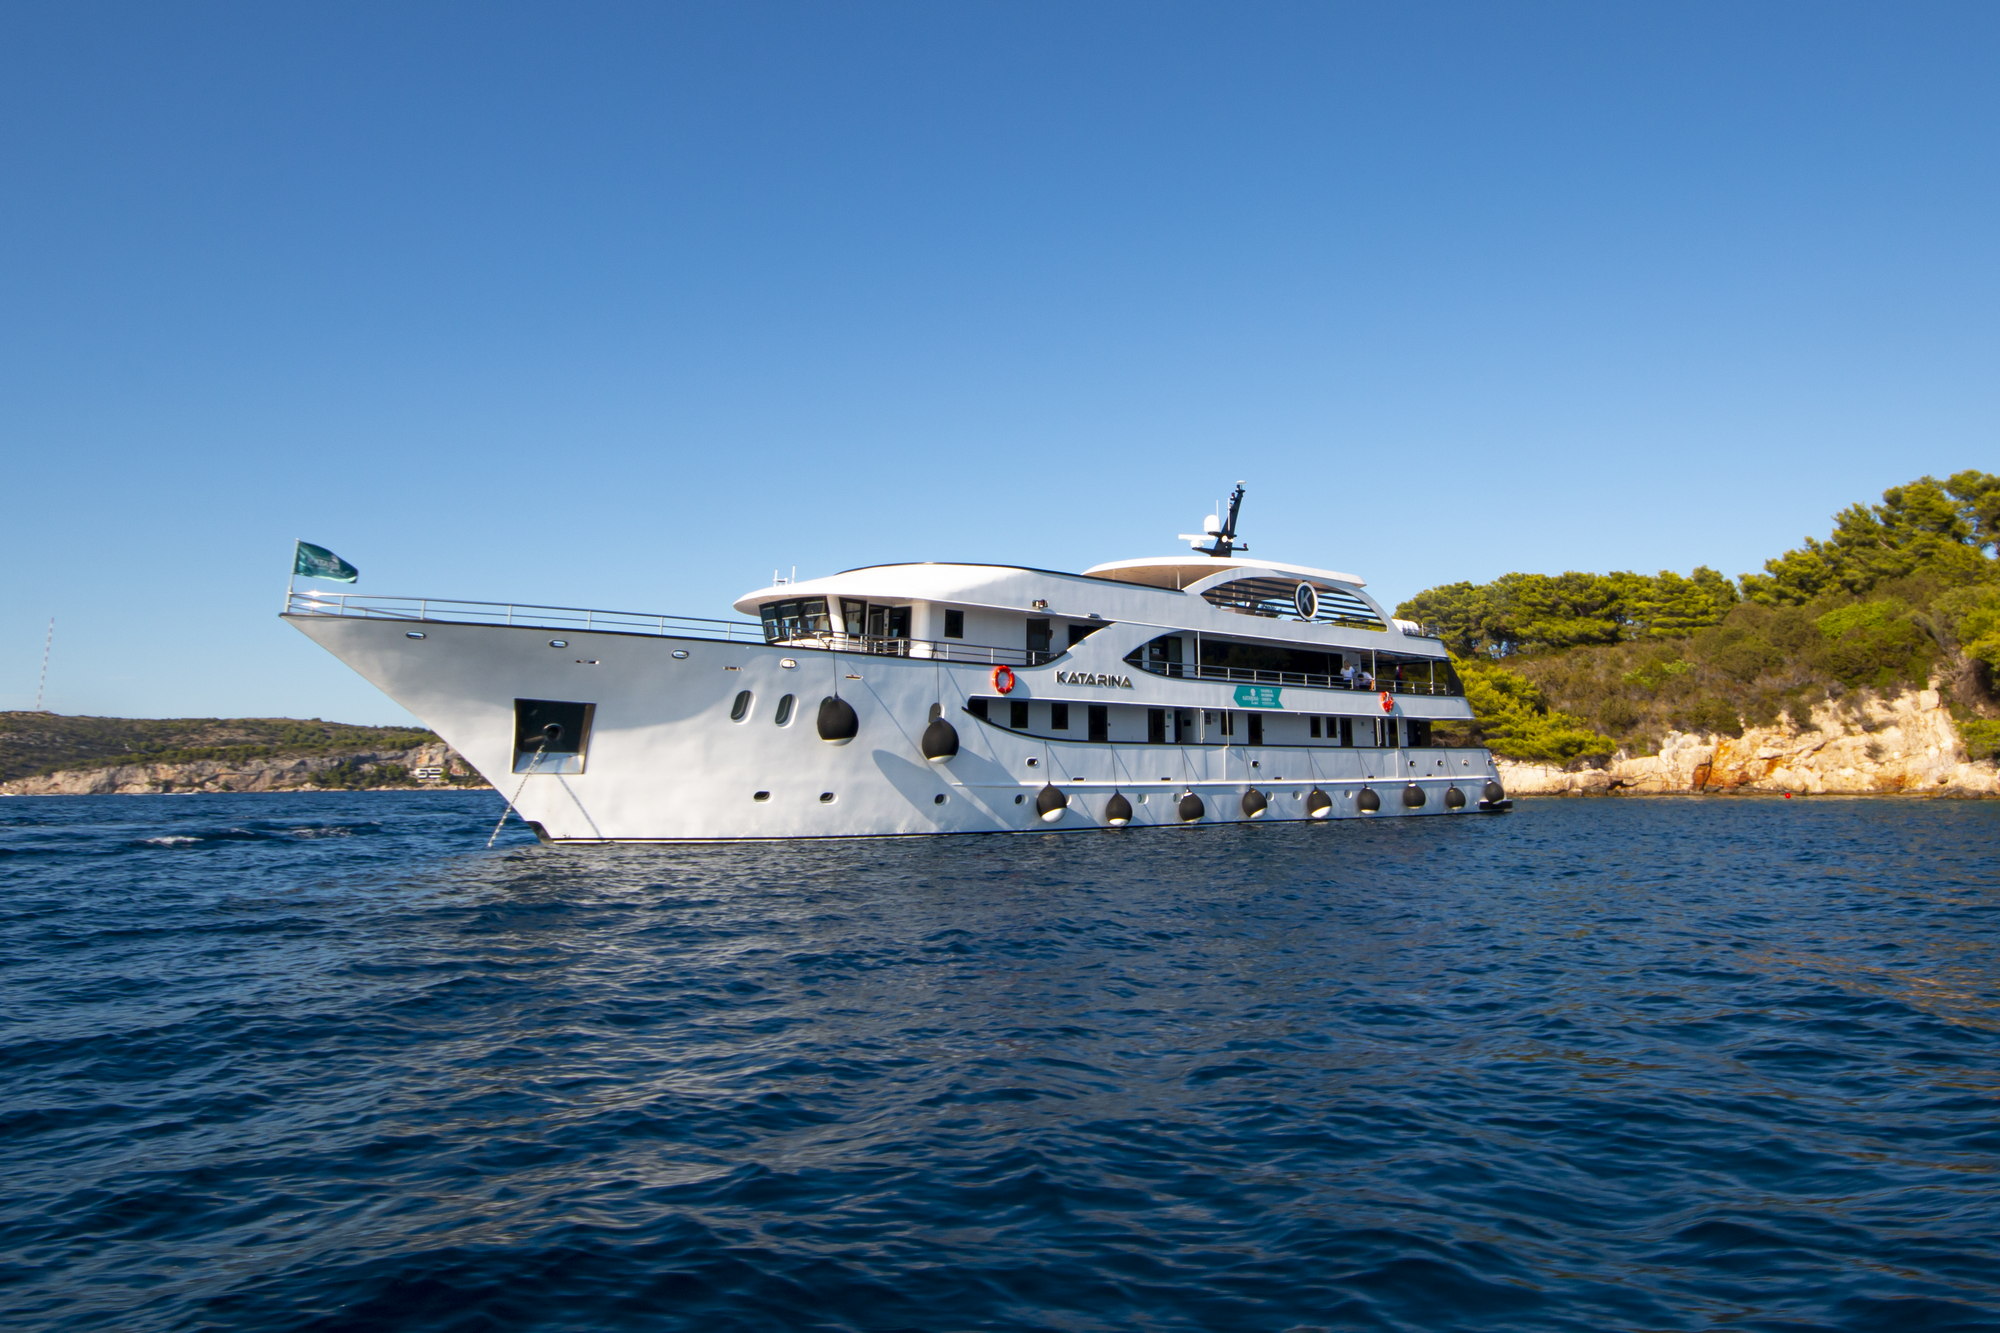 motor yacht for sale in croatia